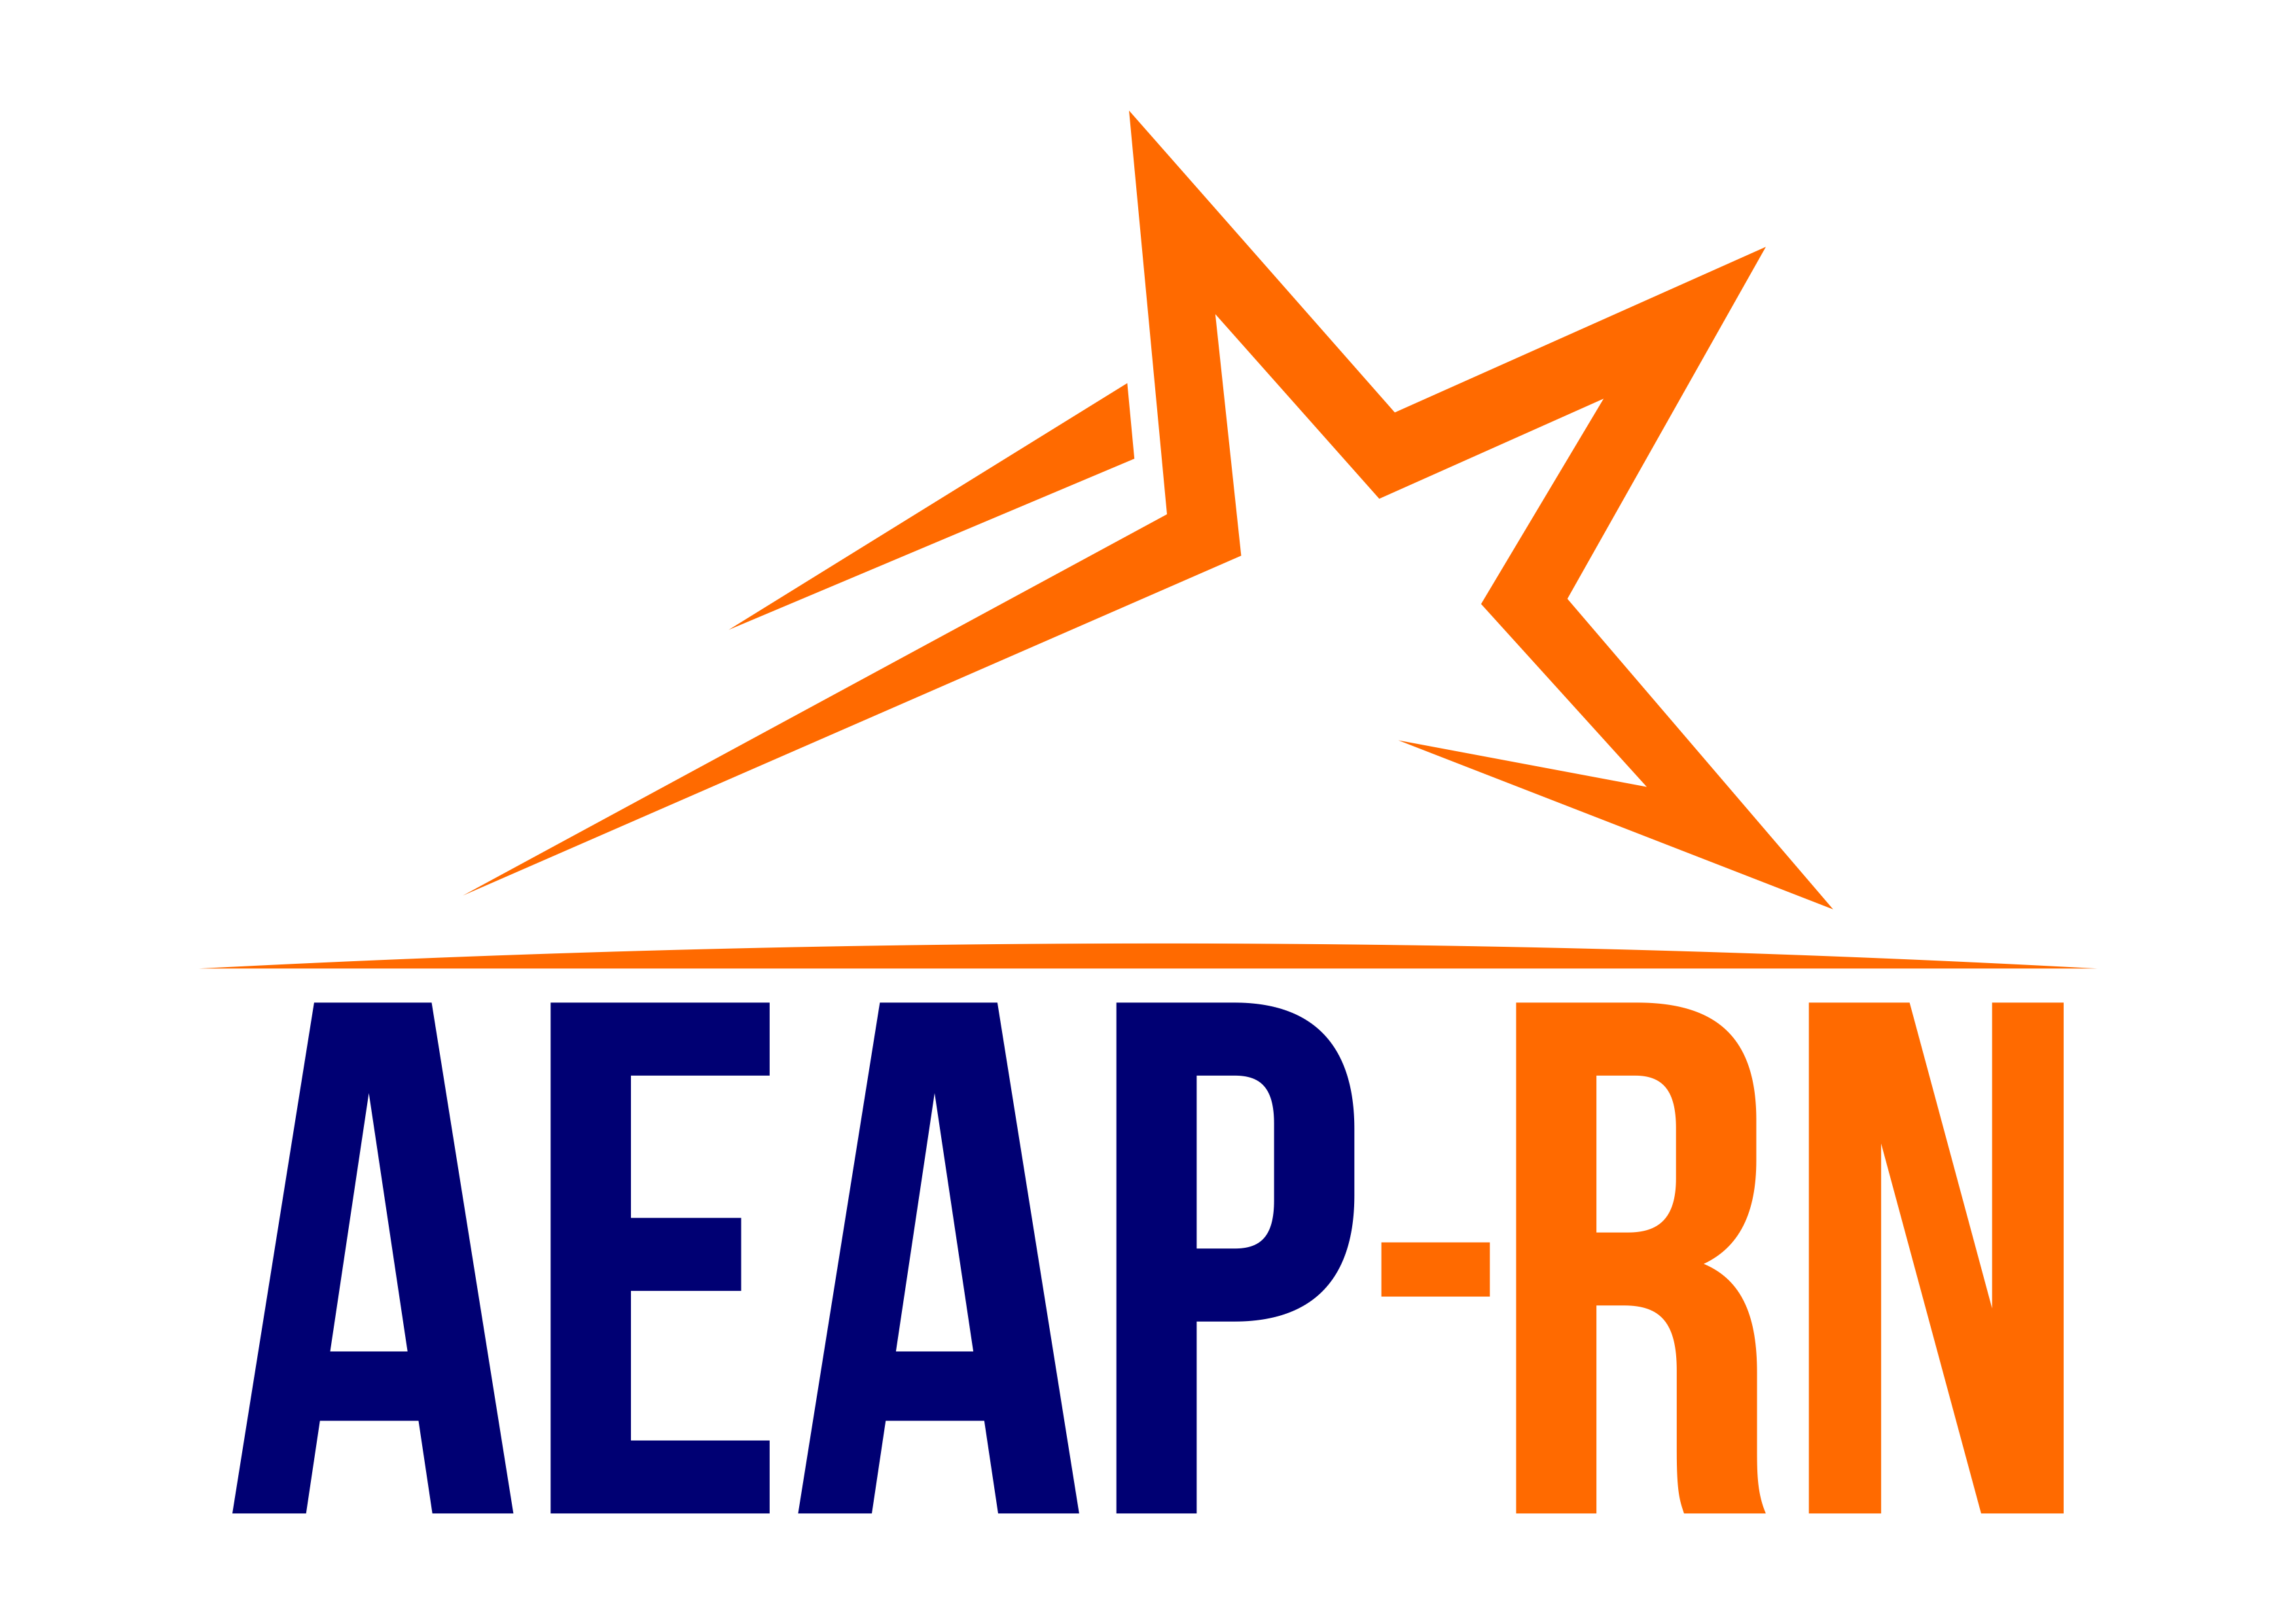 AEAP-RN